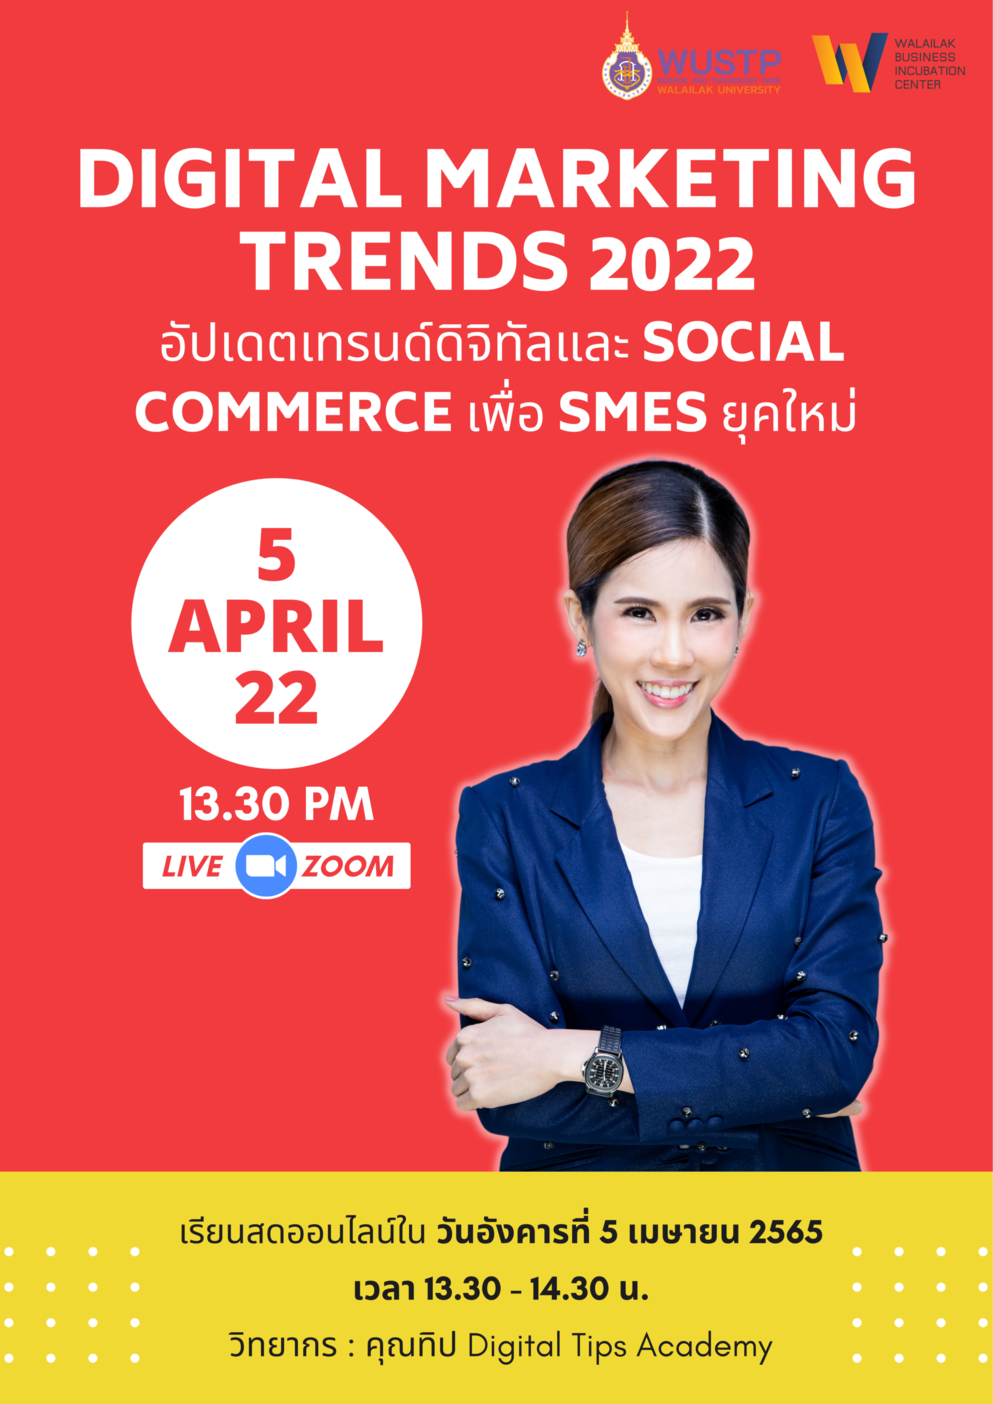 เปิดรับสมัครผู้ประกอบการเข้าร่วมอบรม Digital Marketing Trends 2022 อัปเดตเทรนด์ดิจิทัลและSocial Commerce เพื่อ SMEs ยุคใหม่